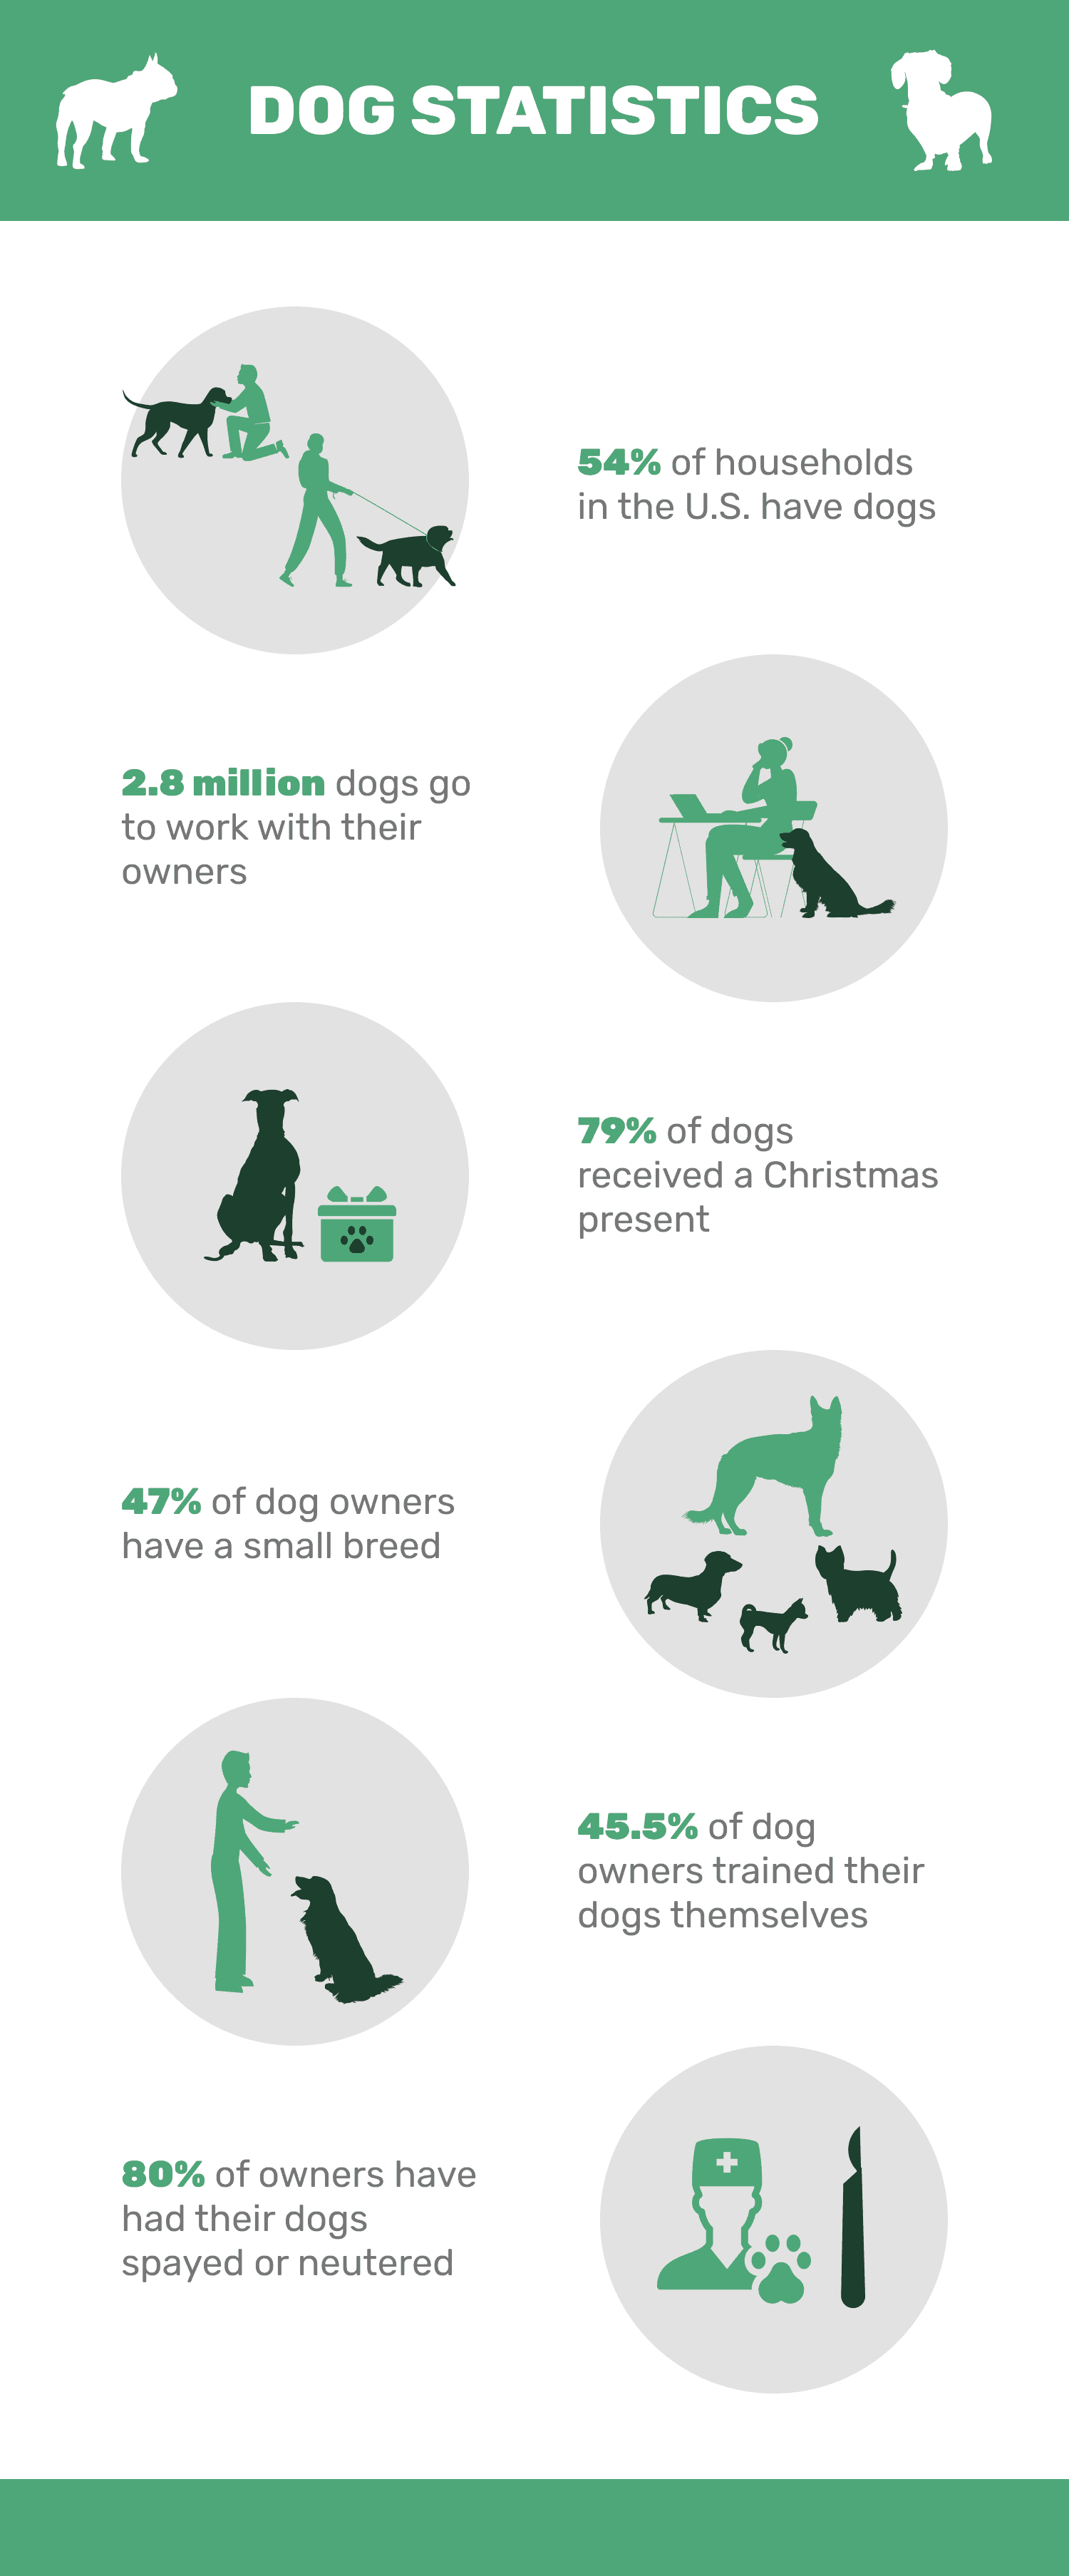 20 statistiques sur les chiens que tous les amoureux des animaux devraient connaître en 2022